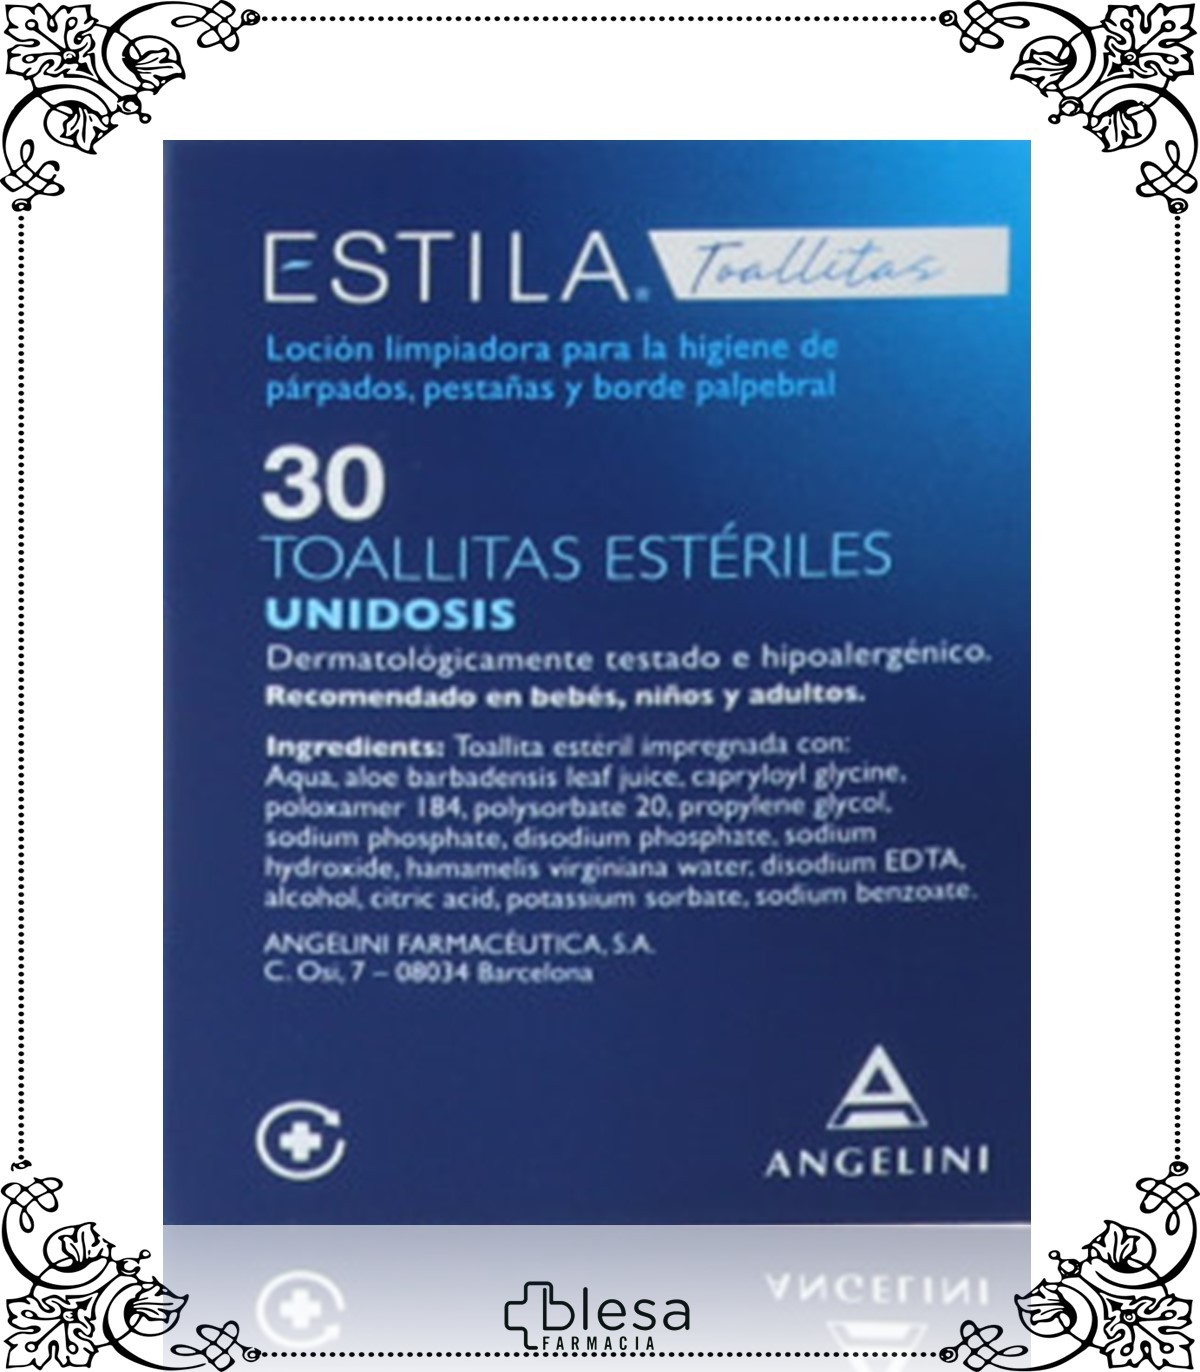 Angelini estila estéril un uso 30 toallitas - Blesa Farmacia